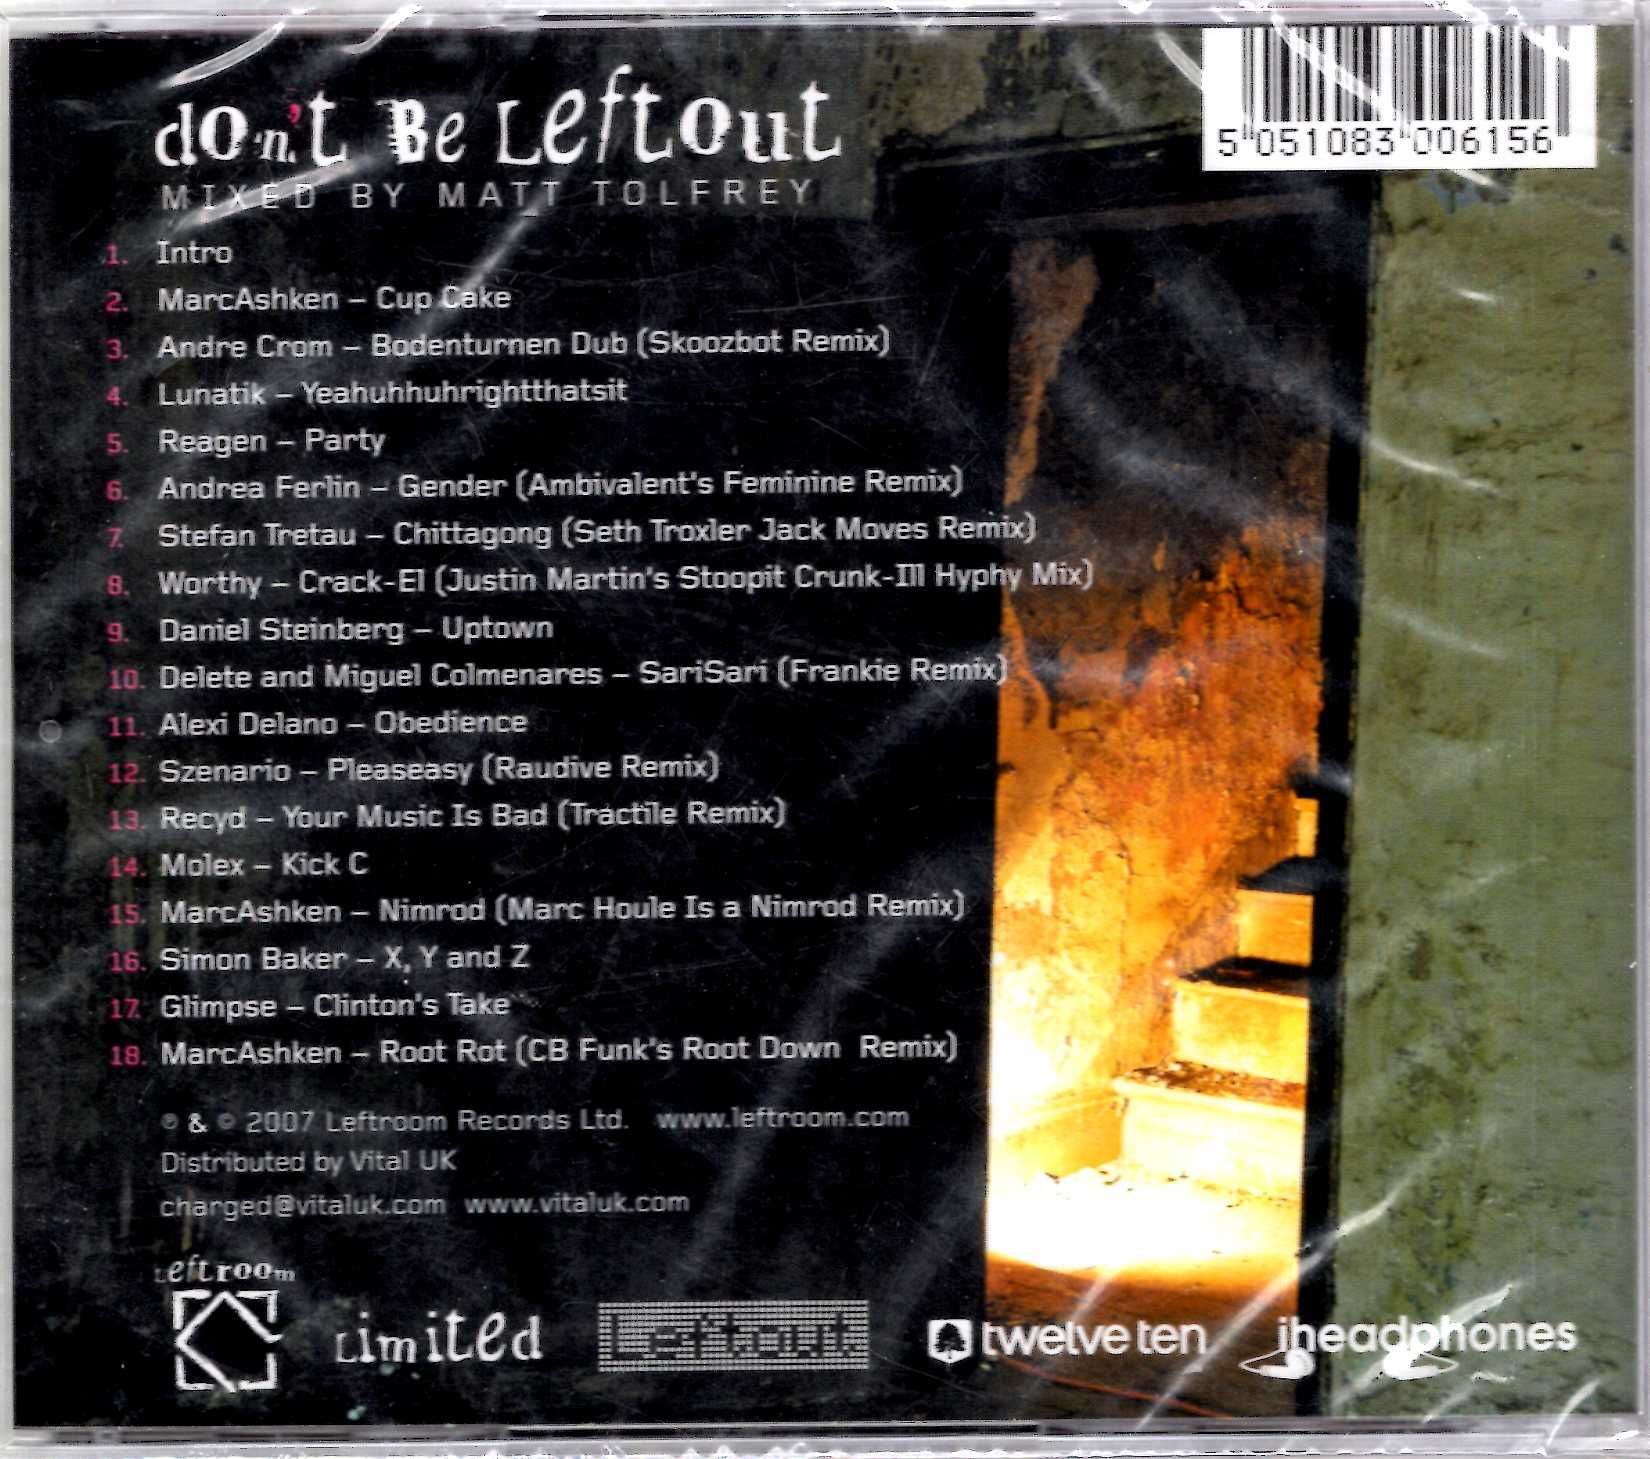 Don't Be Leftout Mixed By Matt Tolfrey (CD)